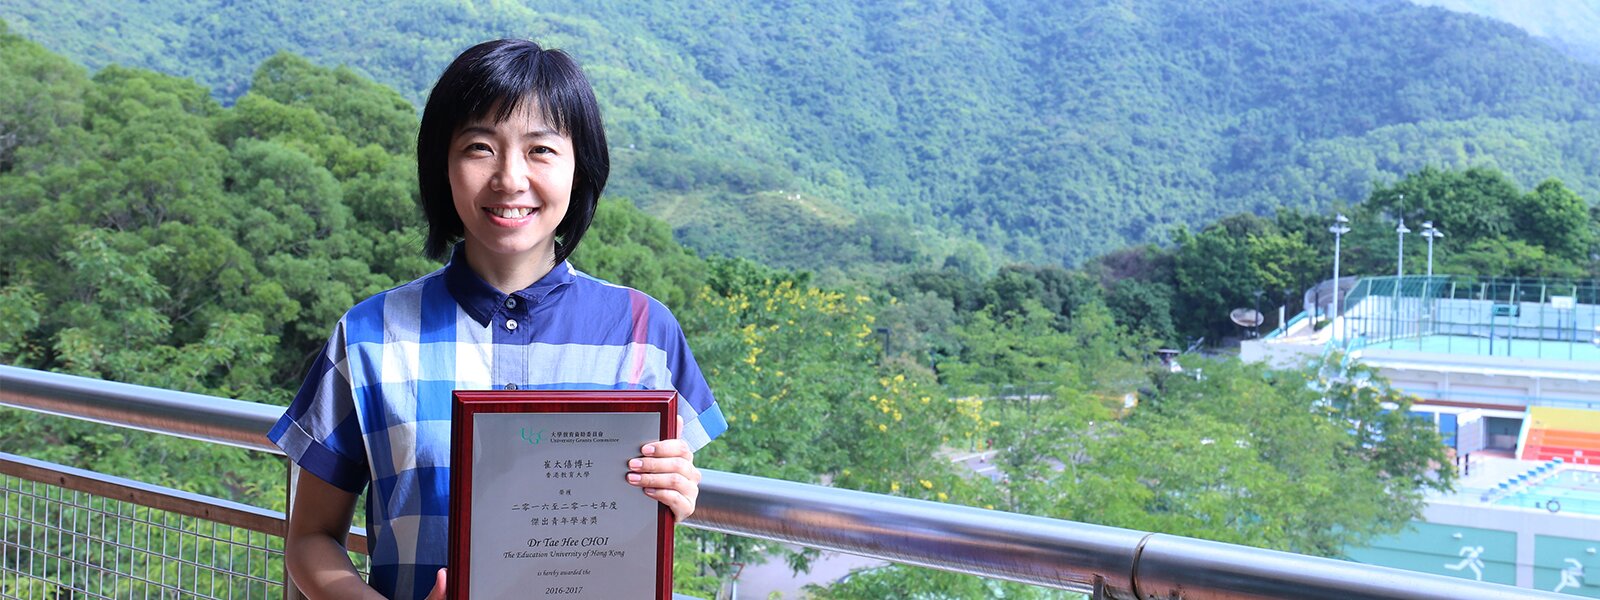 EdUHK Scholar Receives RGC’s Early Career Award